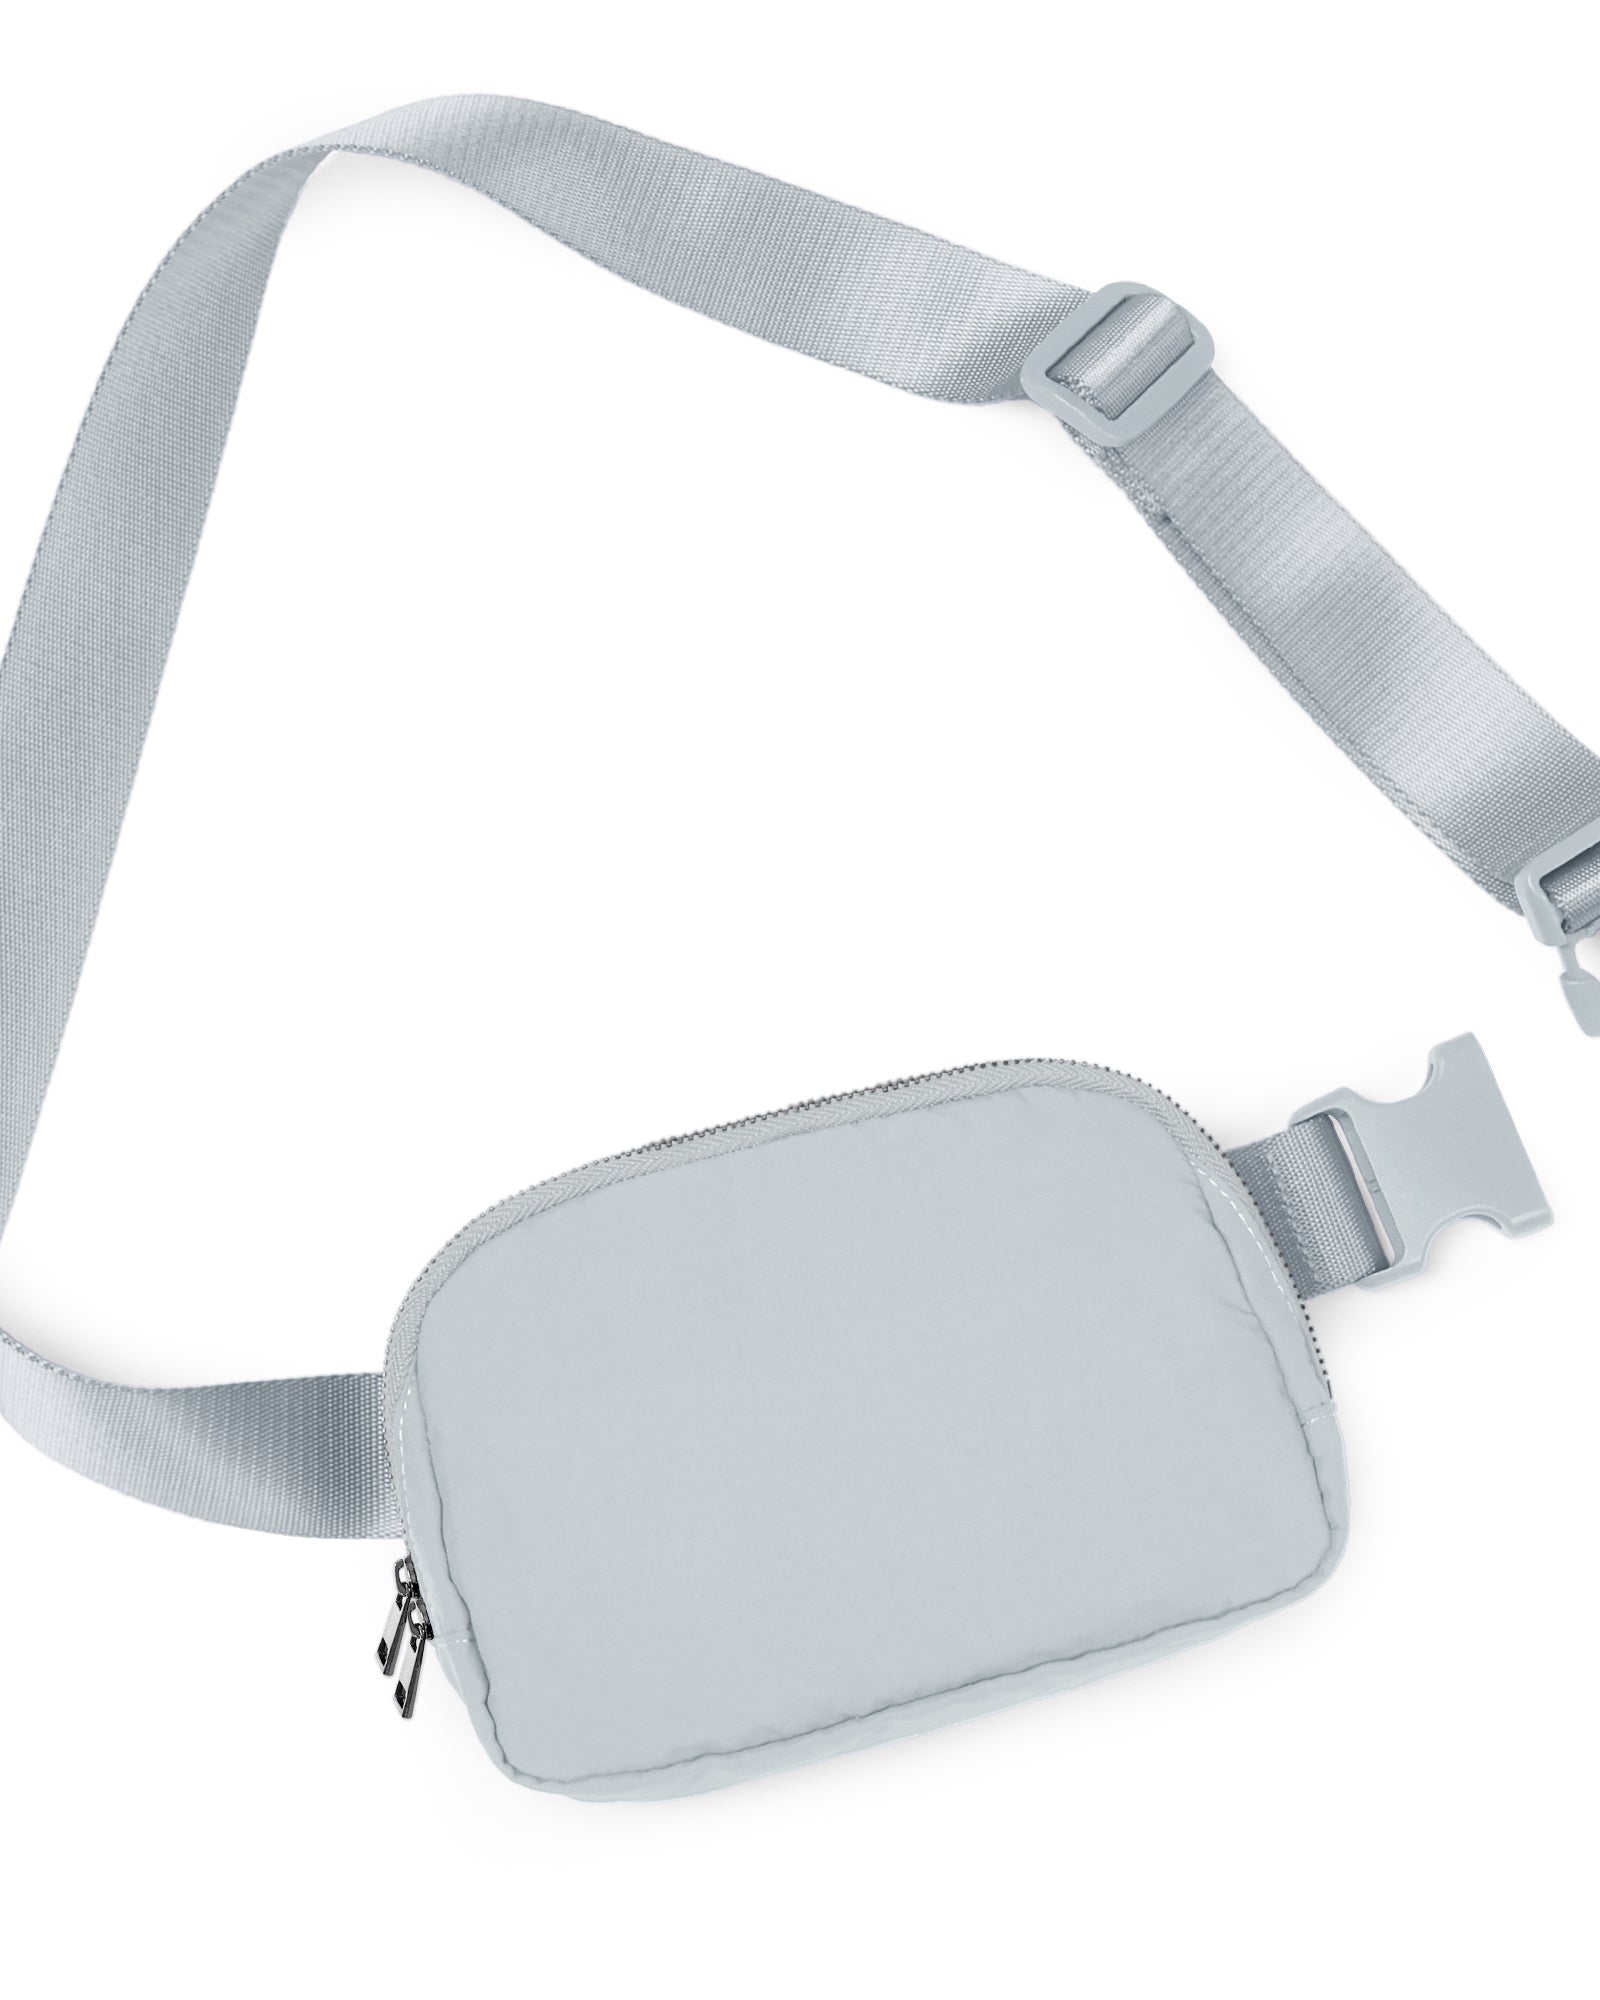 Unisex Two-Way Zip Mini Belt Bag Light Grey 8" x 2" x 5.5" - ododos